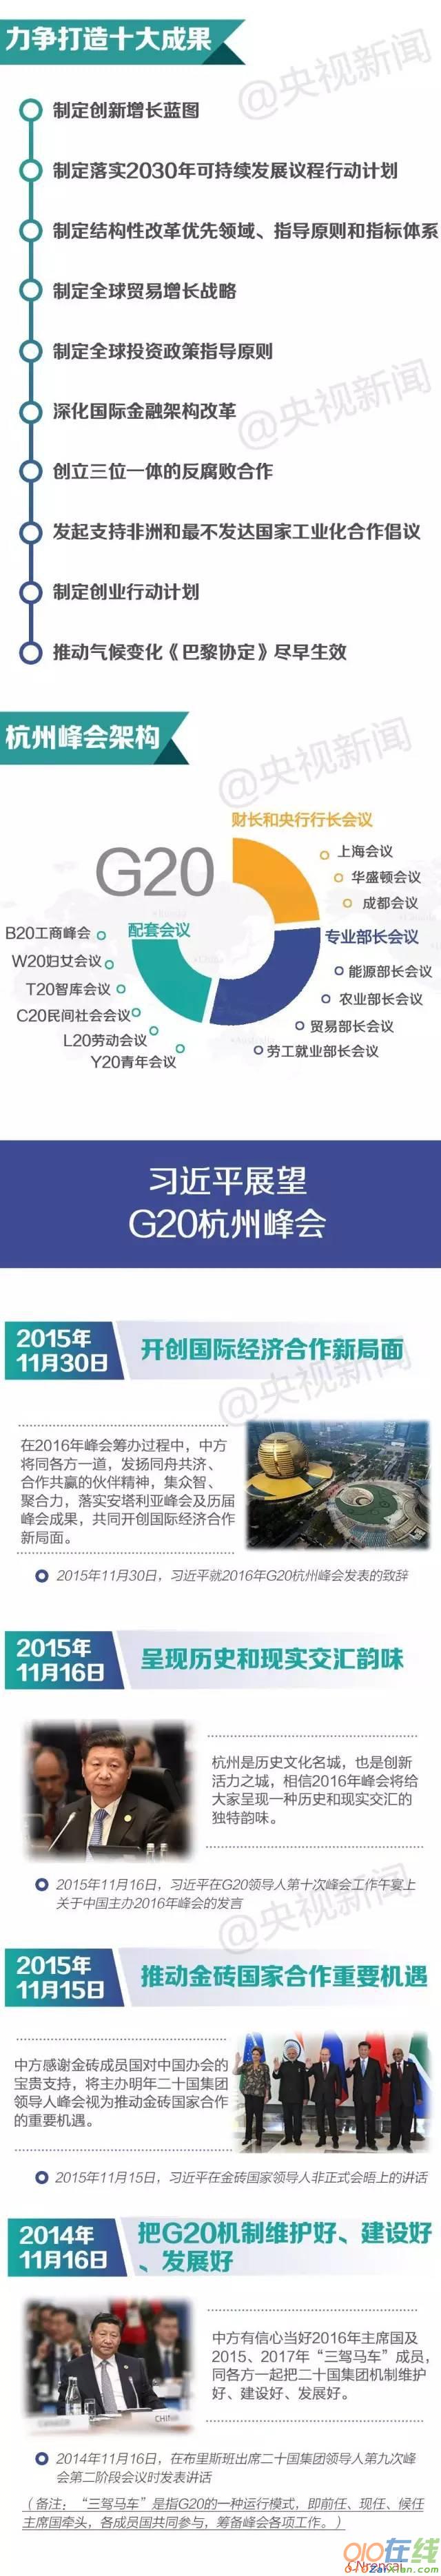 2016习近平的G20峰会时间将如何安排？